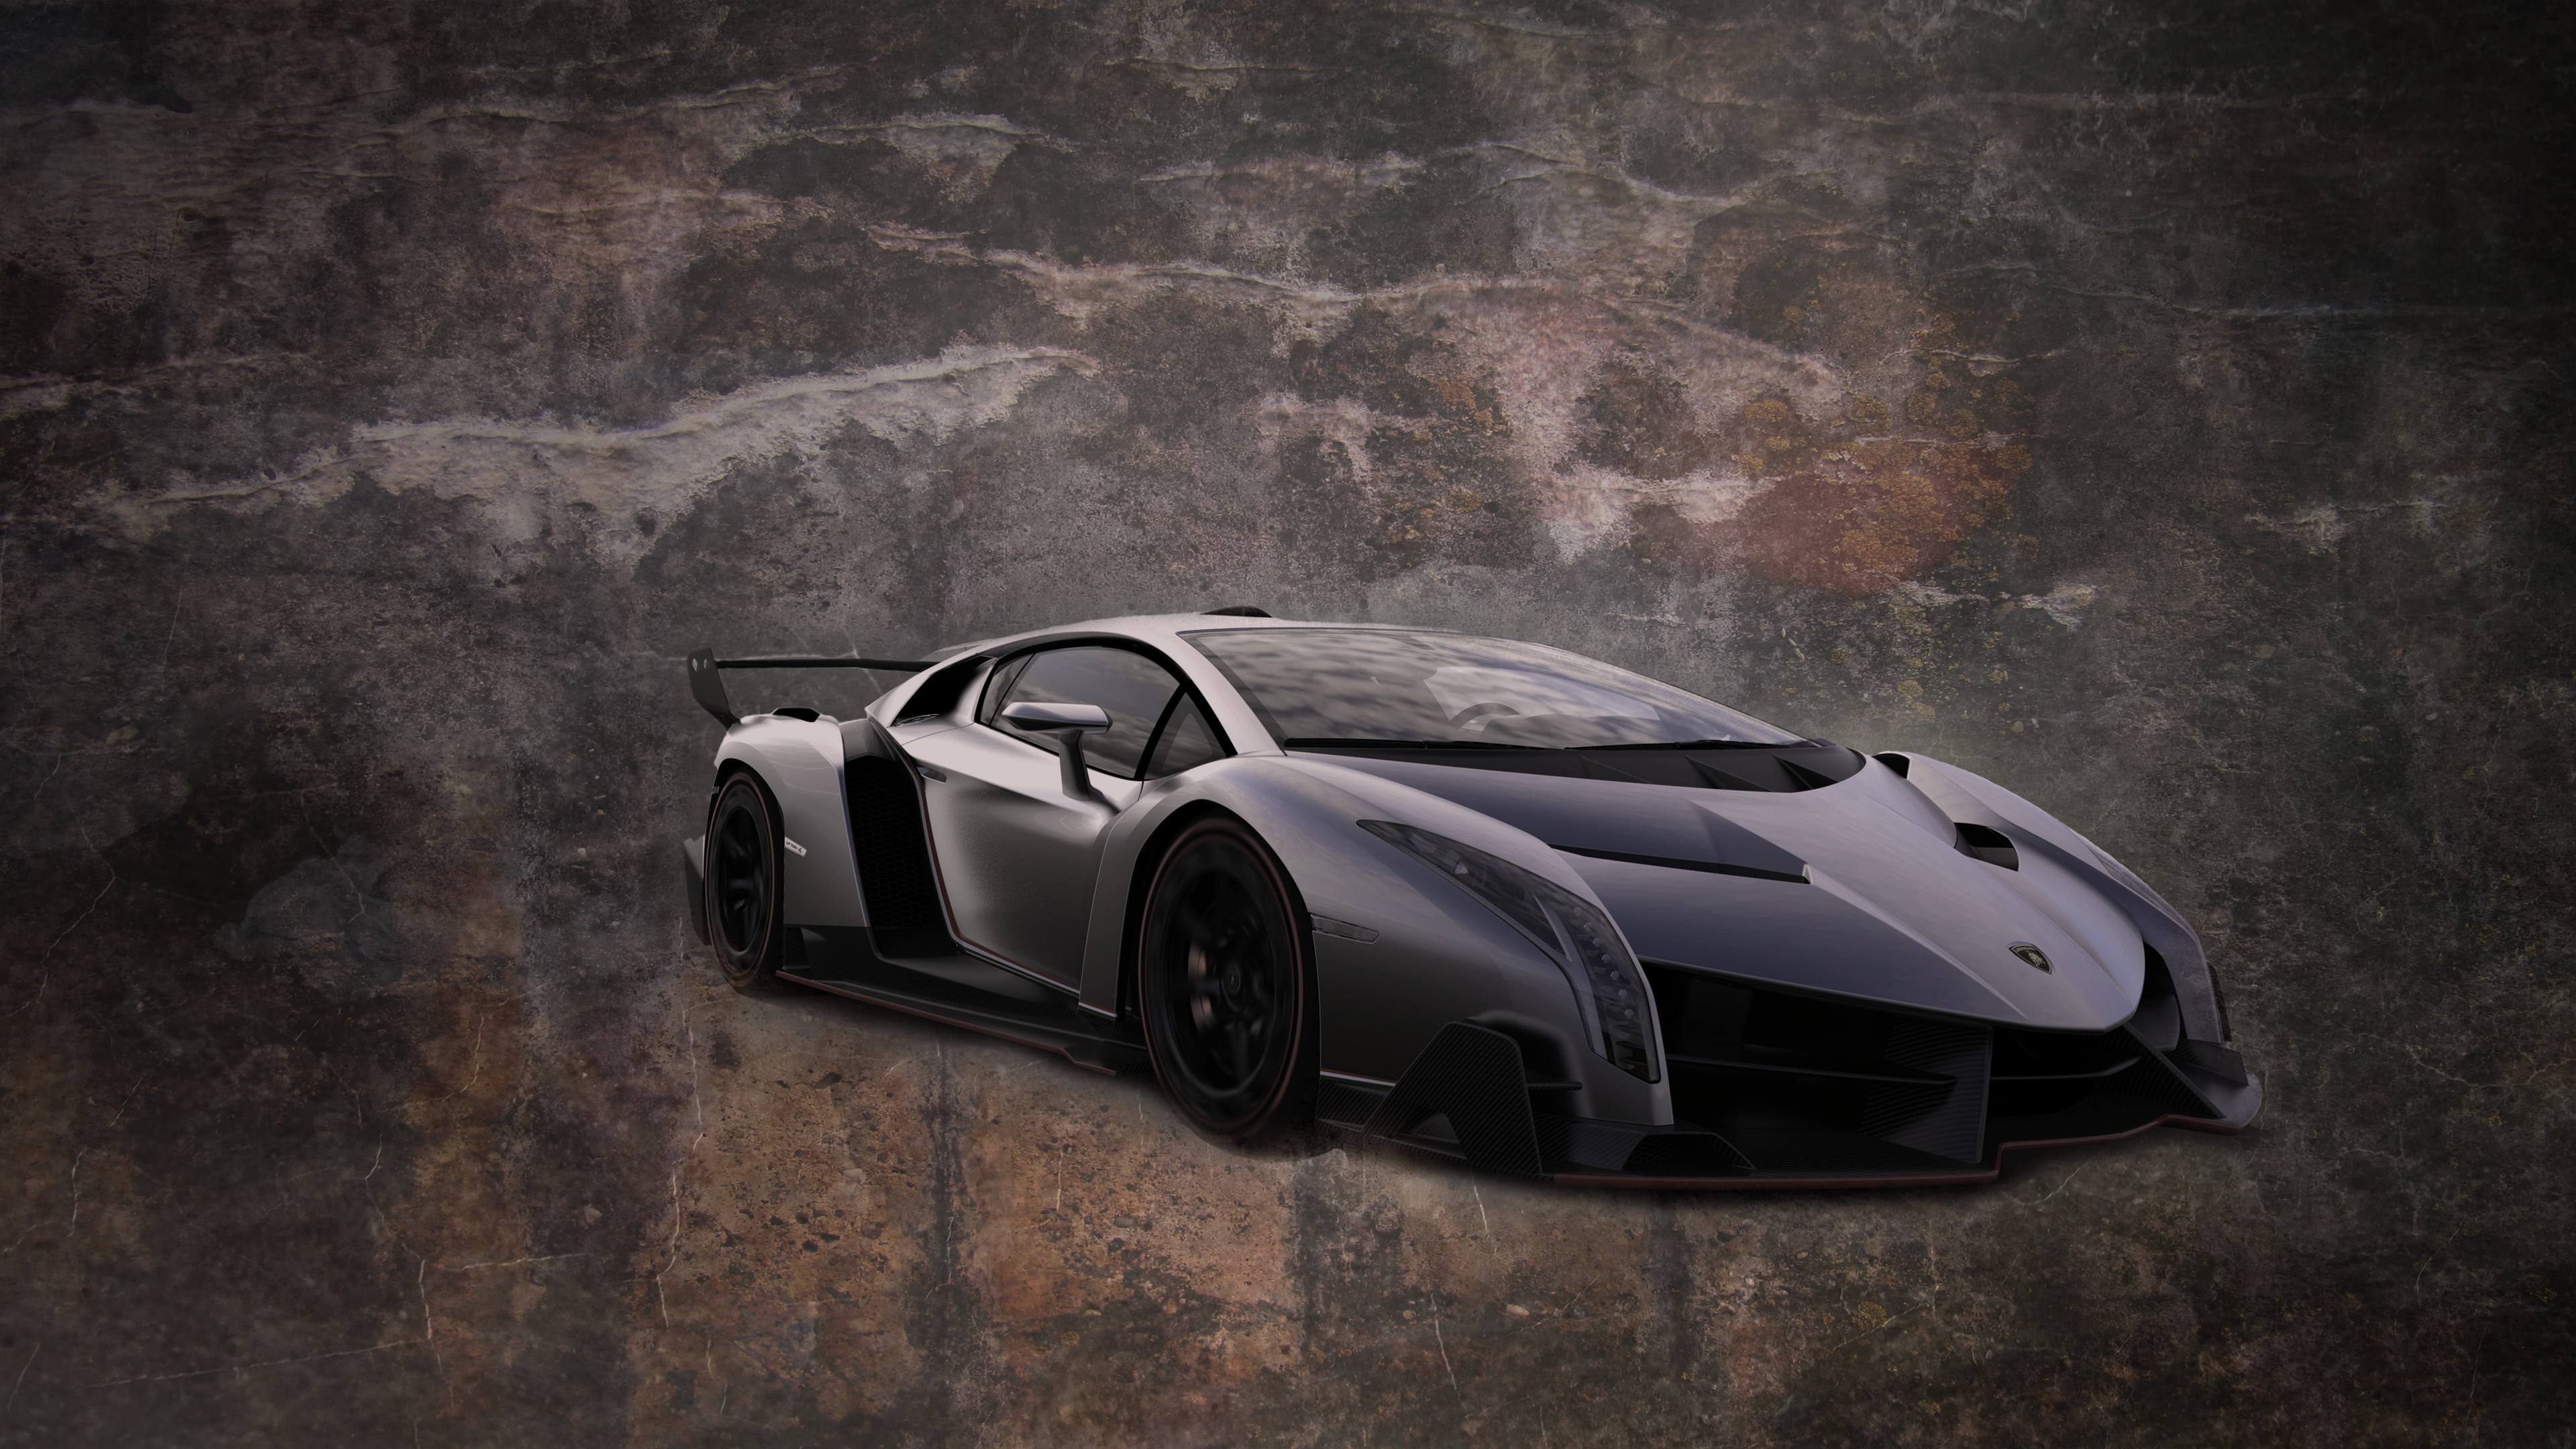 Lamborghini Veneno 4K: Khám phá chiếc siêu xe Lamborghini Veneno ầm ĩ và đầy mạnh mẽ thông qua những hình ảnh chất lượng 4K. Trải nghiệm những đường cong tuyệt đẹp và tỷ lệ chính xác tuyệt vời của một siêu xe đình đám.